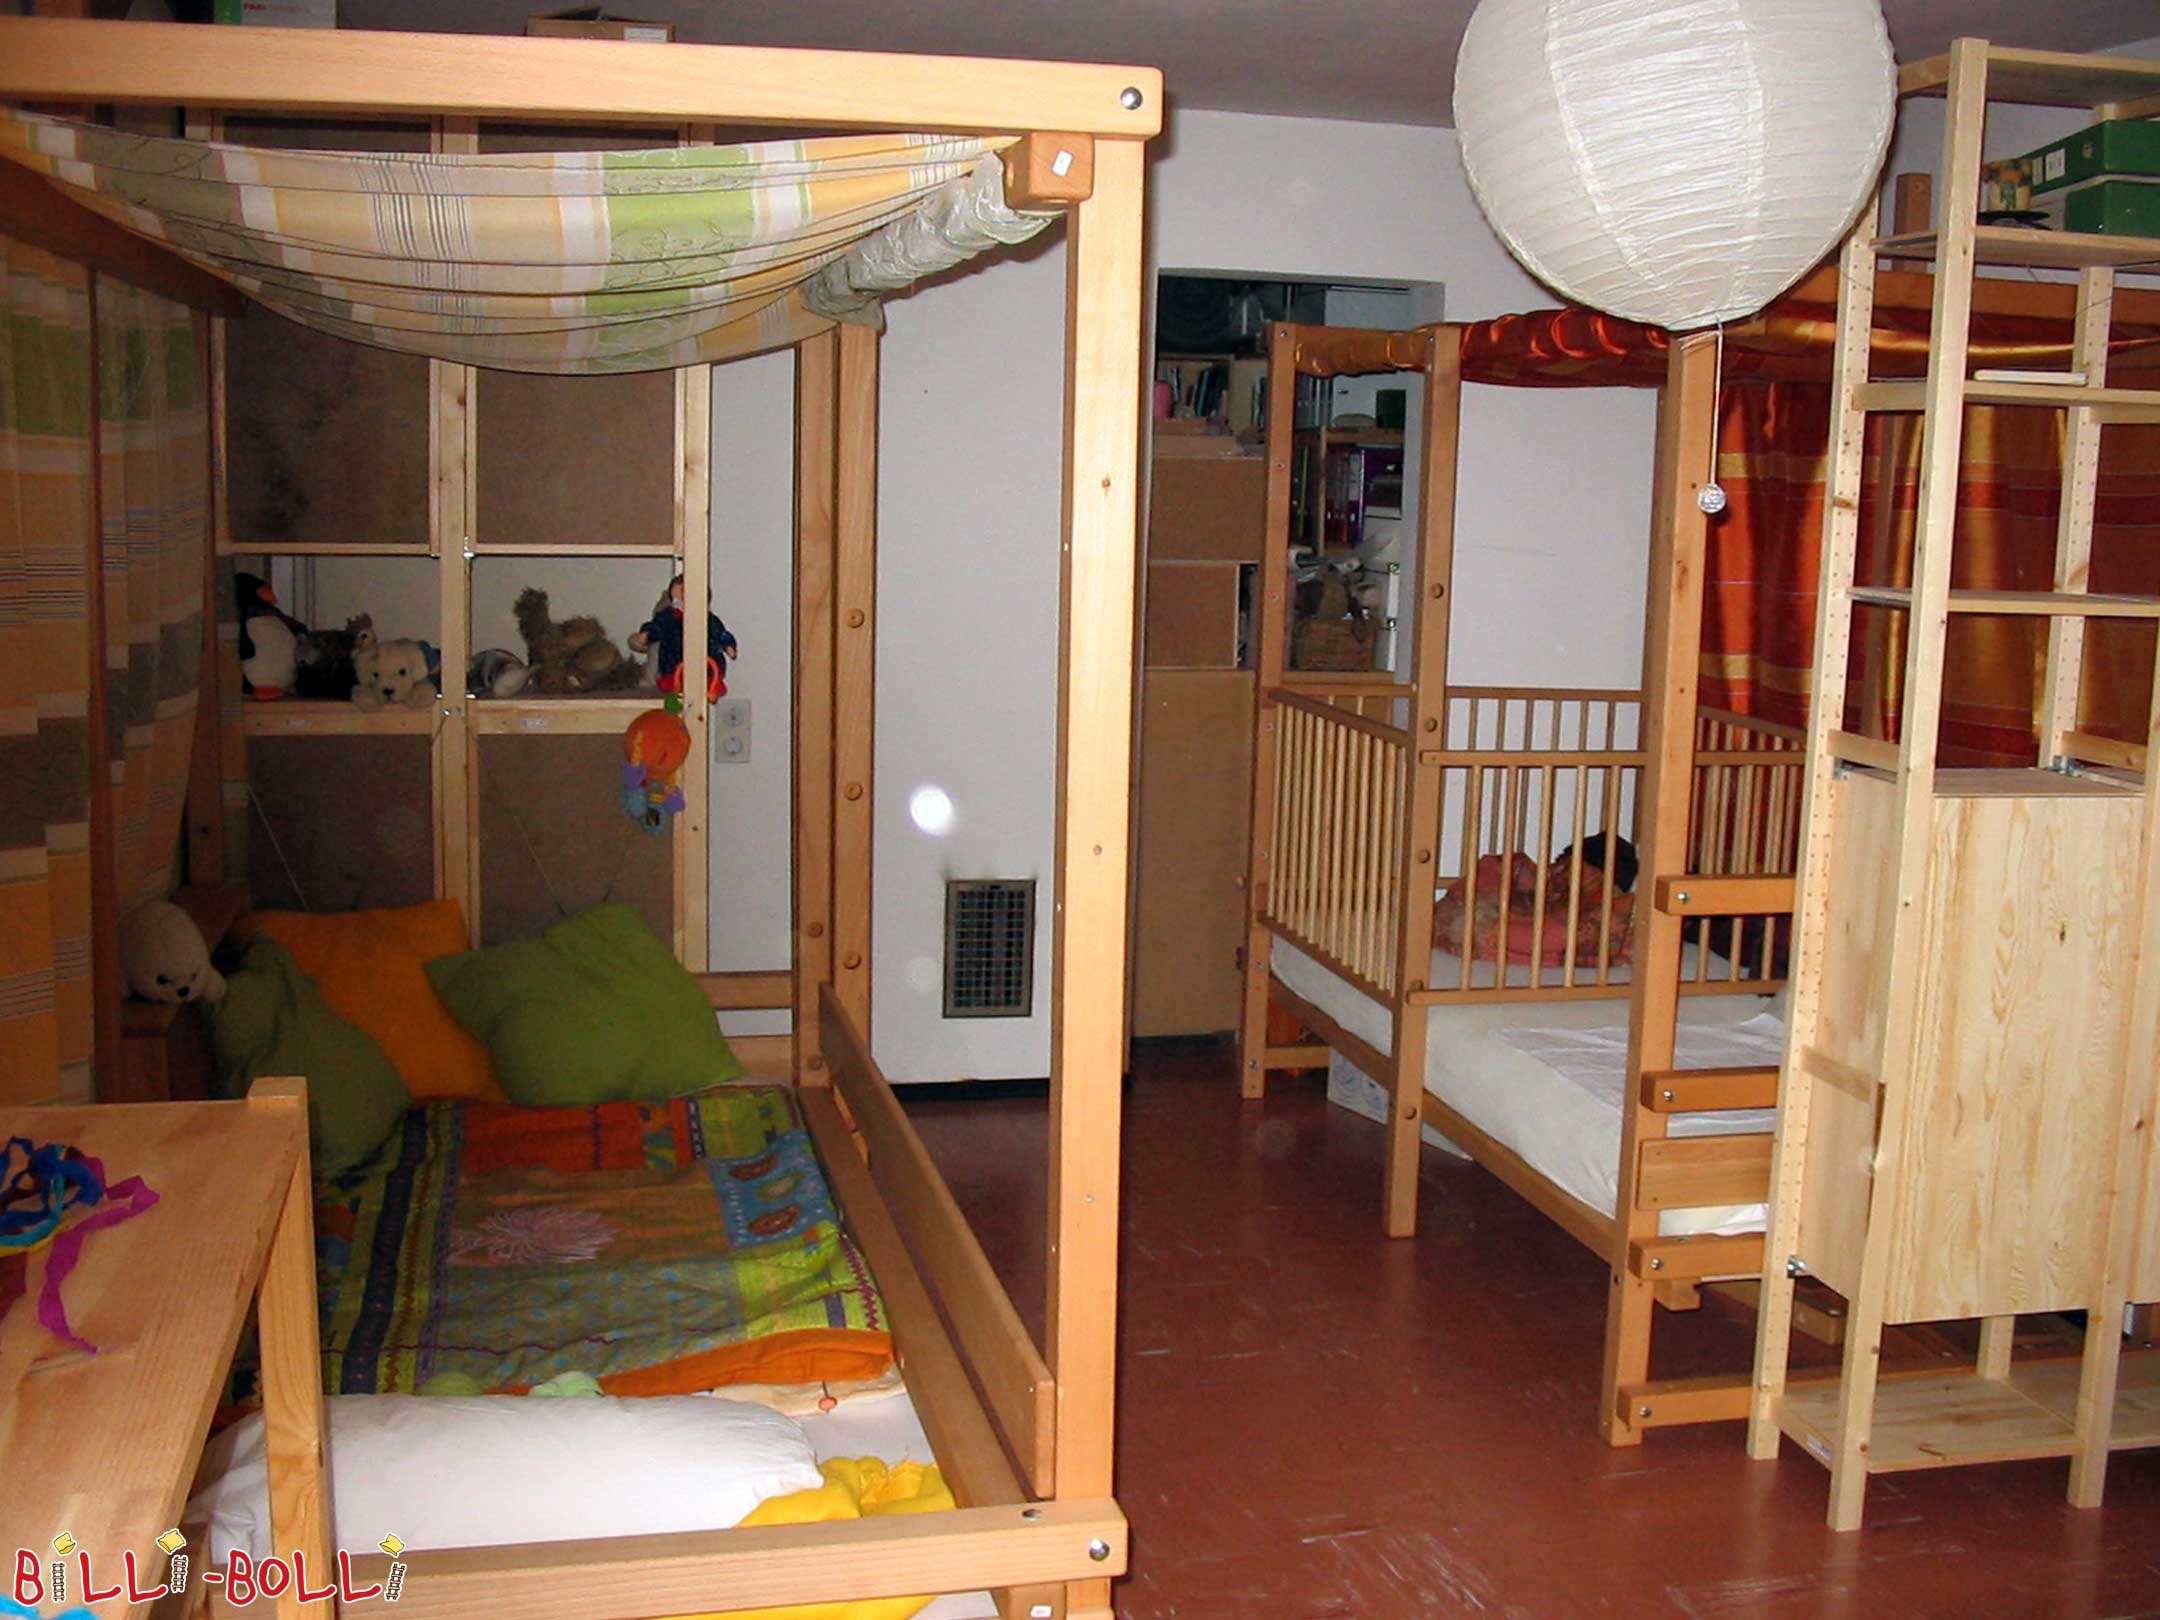 2 yükseklikteki çocukla birlikte büyüyen iki çatı katı yatağı, sağda … (Çocukla birlikte büyüyen çatı katı yatağı)